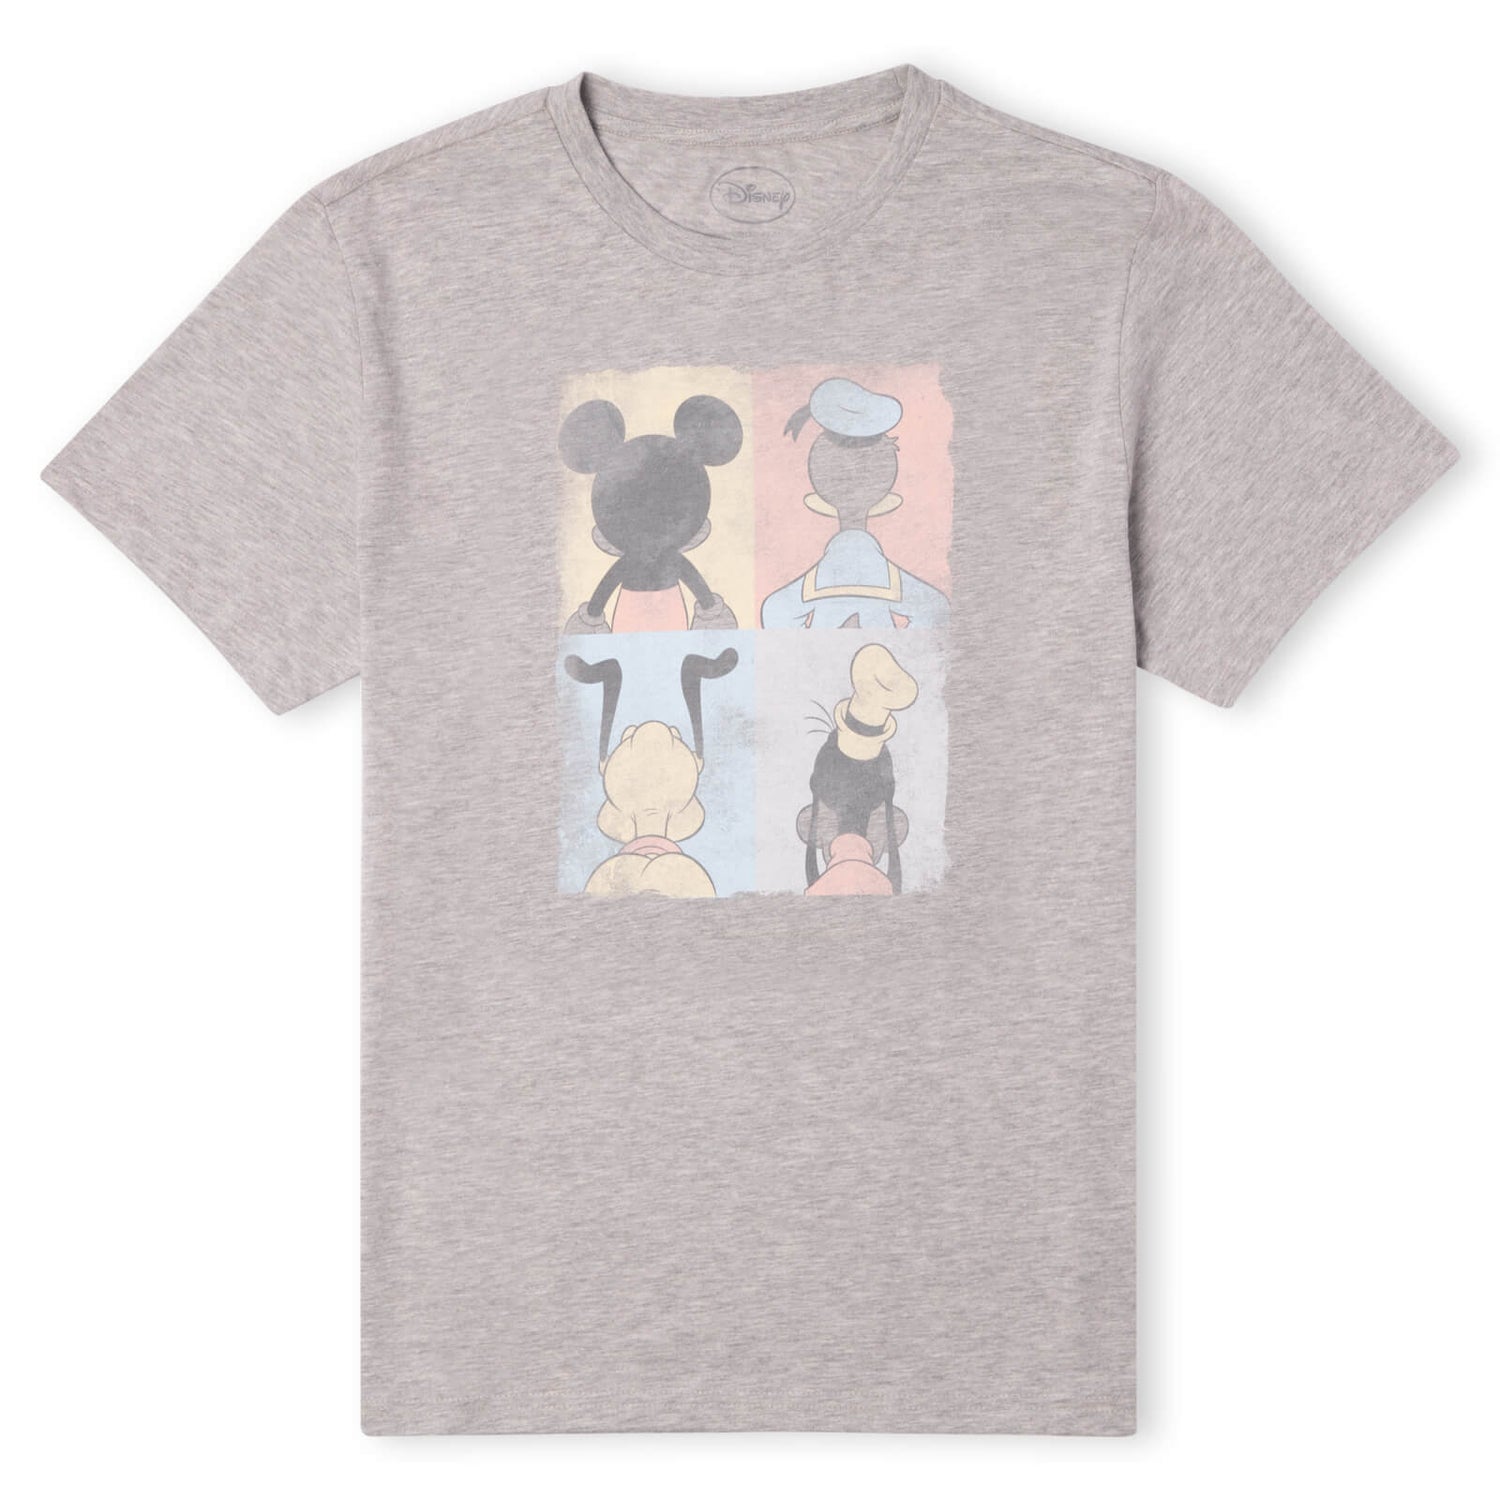 T-Shirt Disney Topolino Paperino Topolino Pluto Pippo Tiles - Grigio